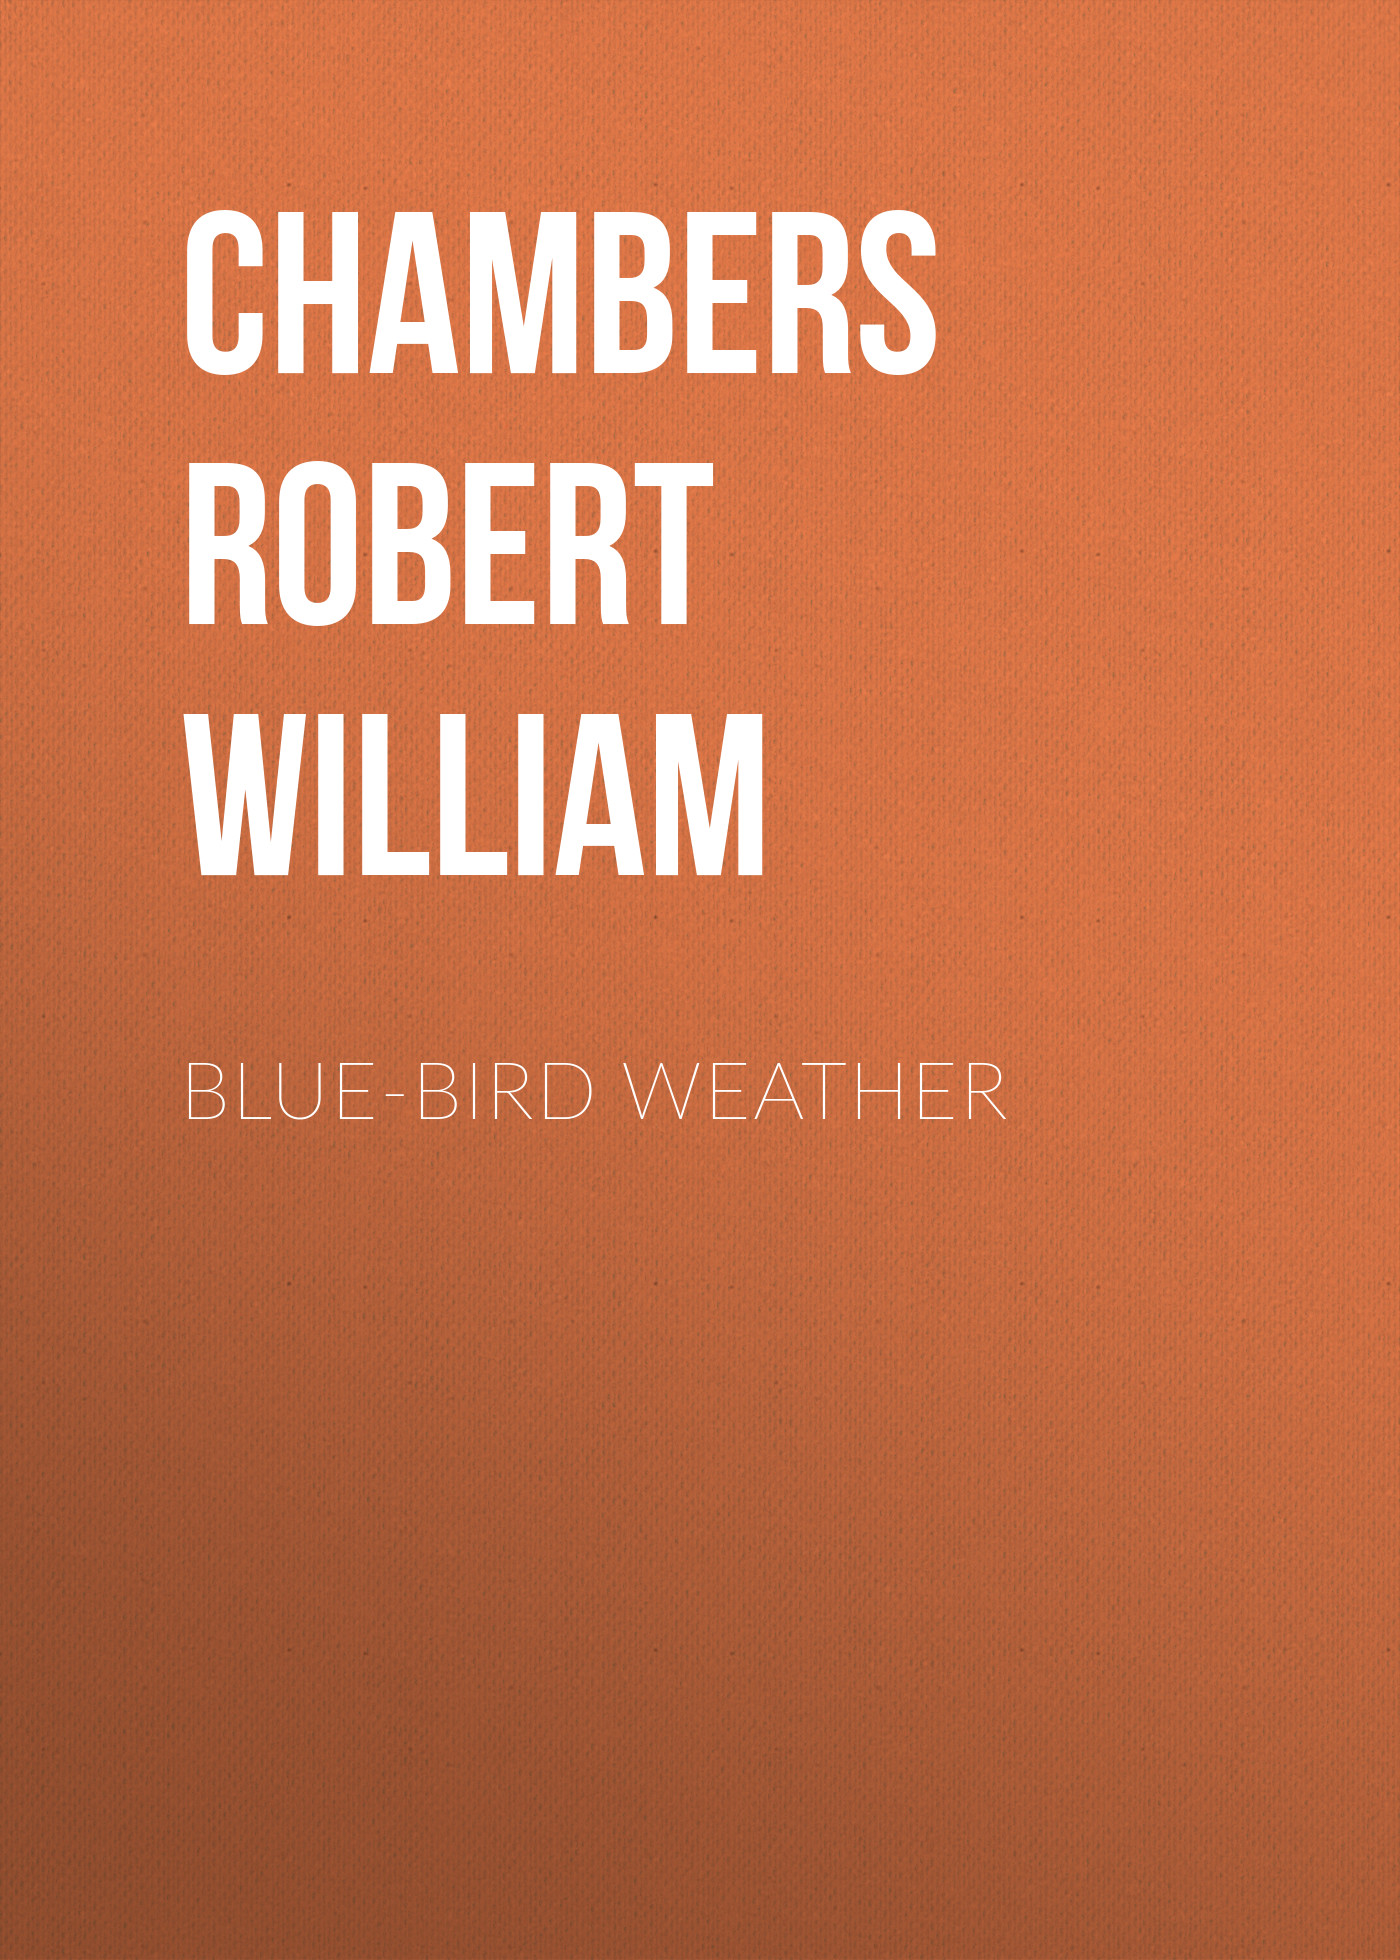 Книга Blue-Bird Weather из серии , созданная Robert Chambers, может относится к жанру Зарубежная классика, Зарубежная старинная литература. Стоимость электронной книги Blue-Bird Weather с идентификатором 36323252 составляет 0 руб.